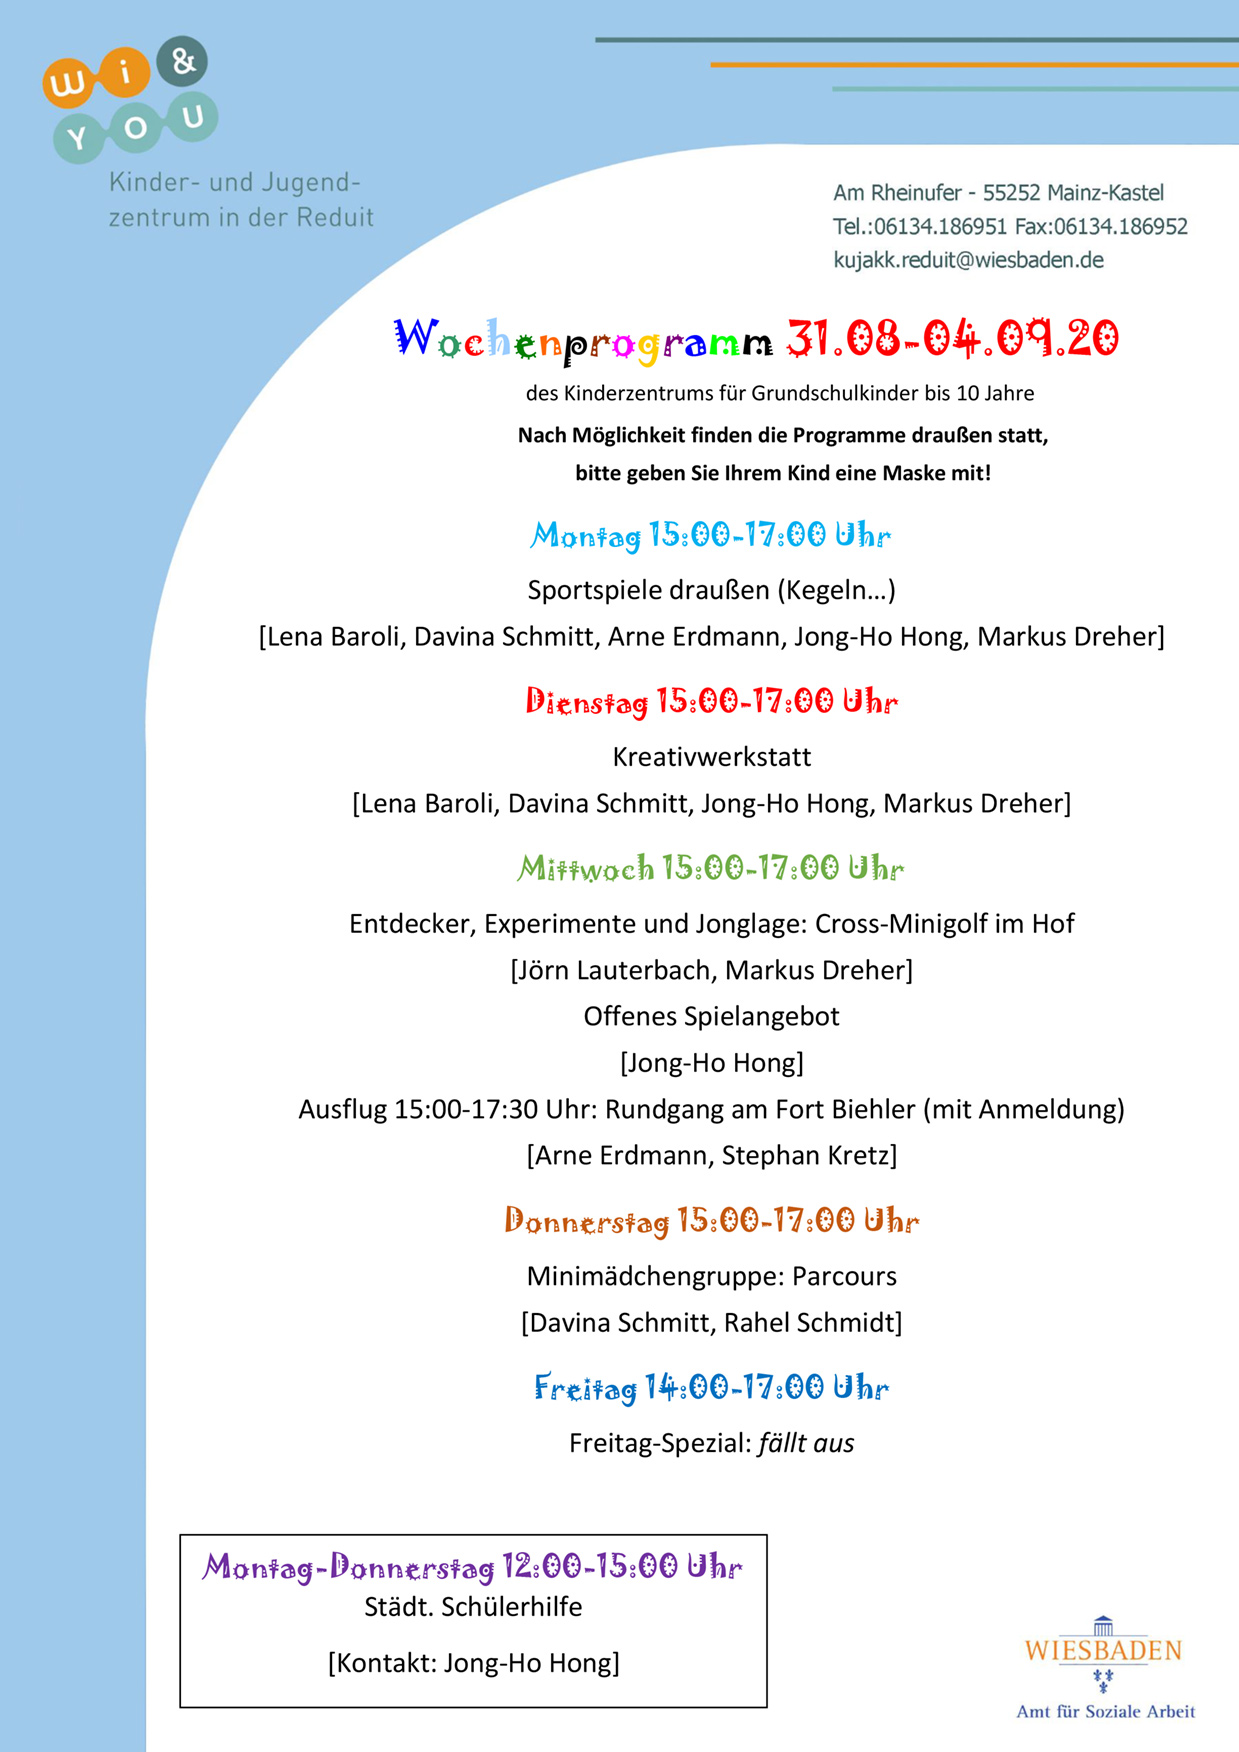 
Wochenprogramm vom 24. bis 28. August 2020 des Kinderzentrums fÃ¼r Grundschulkinder bis 10 Jahre . kujakk . Kinder- und Jugendzentrum in der Reduit . Mainz-Kastel